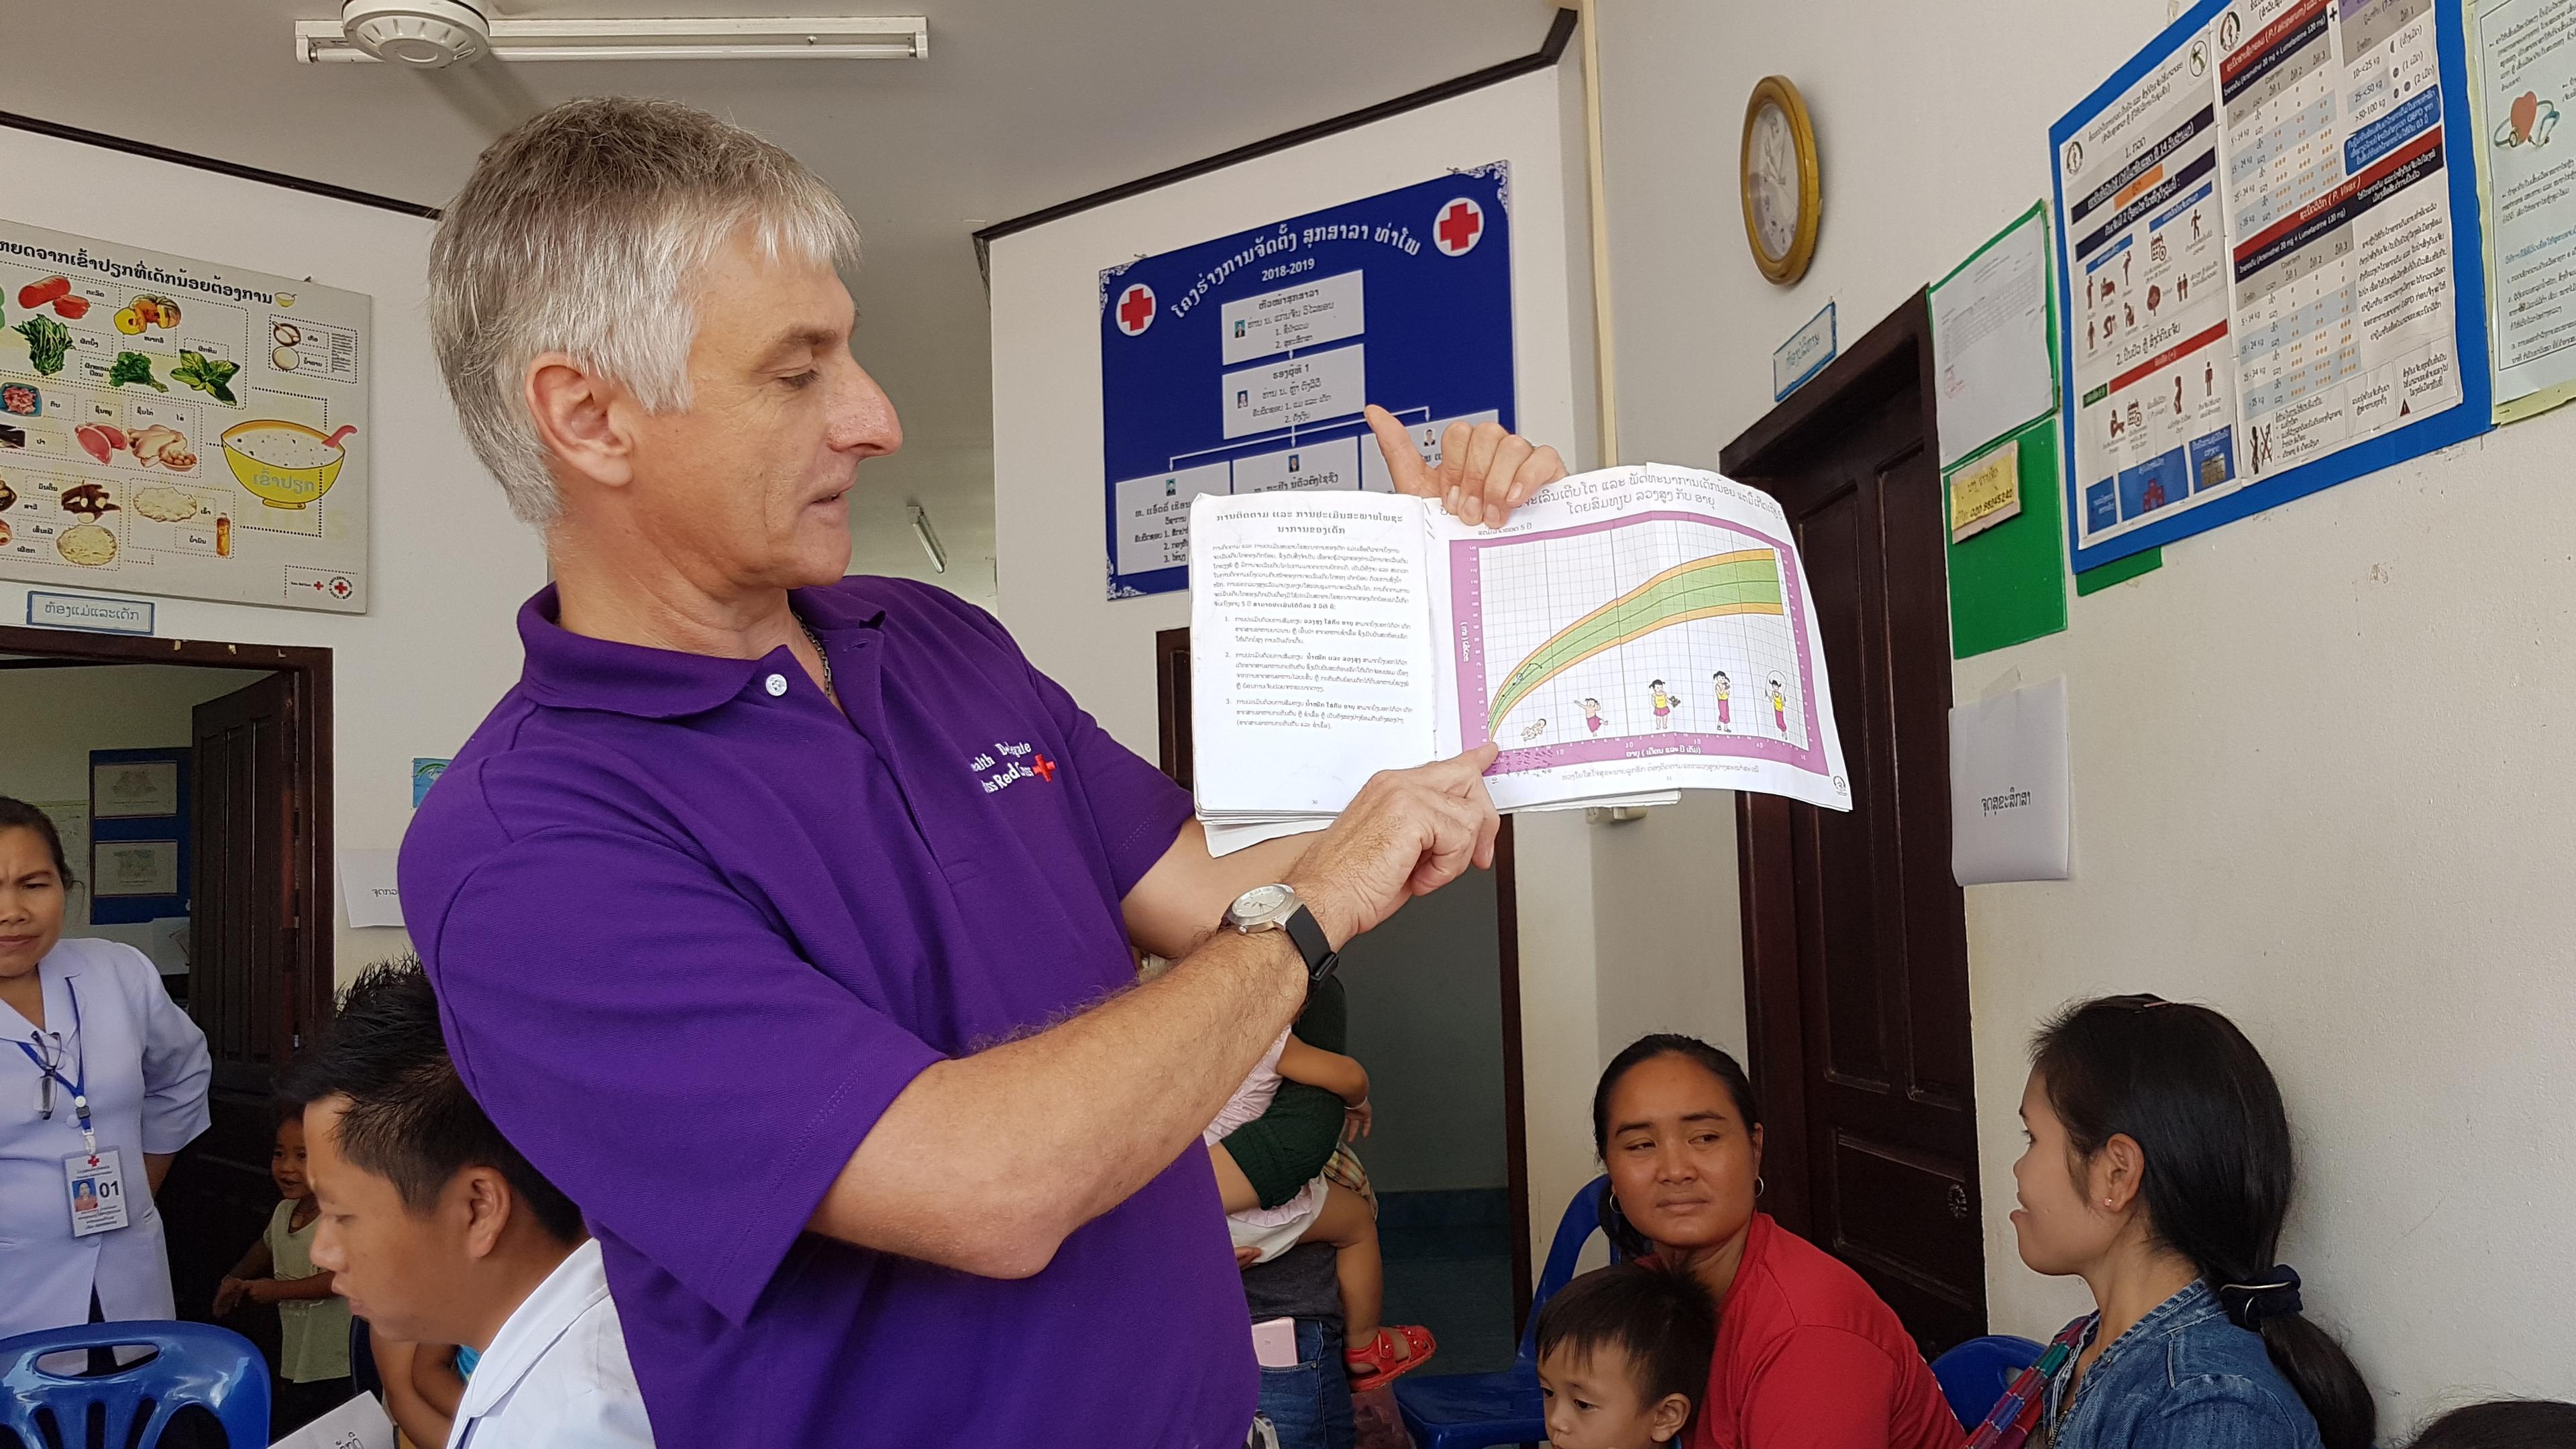 Dans la salle d’attente d’un centre de santé au Laos, un homme informe des femmes avec enfants en bas âge sur le développement de leurs petits.  